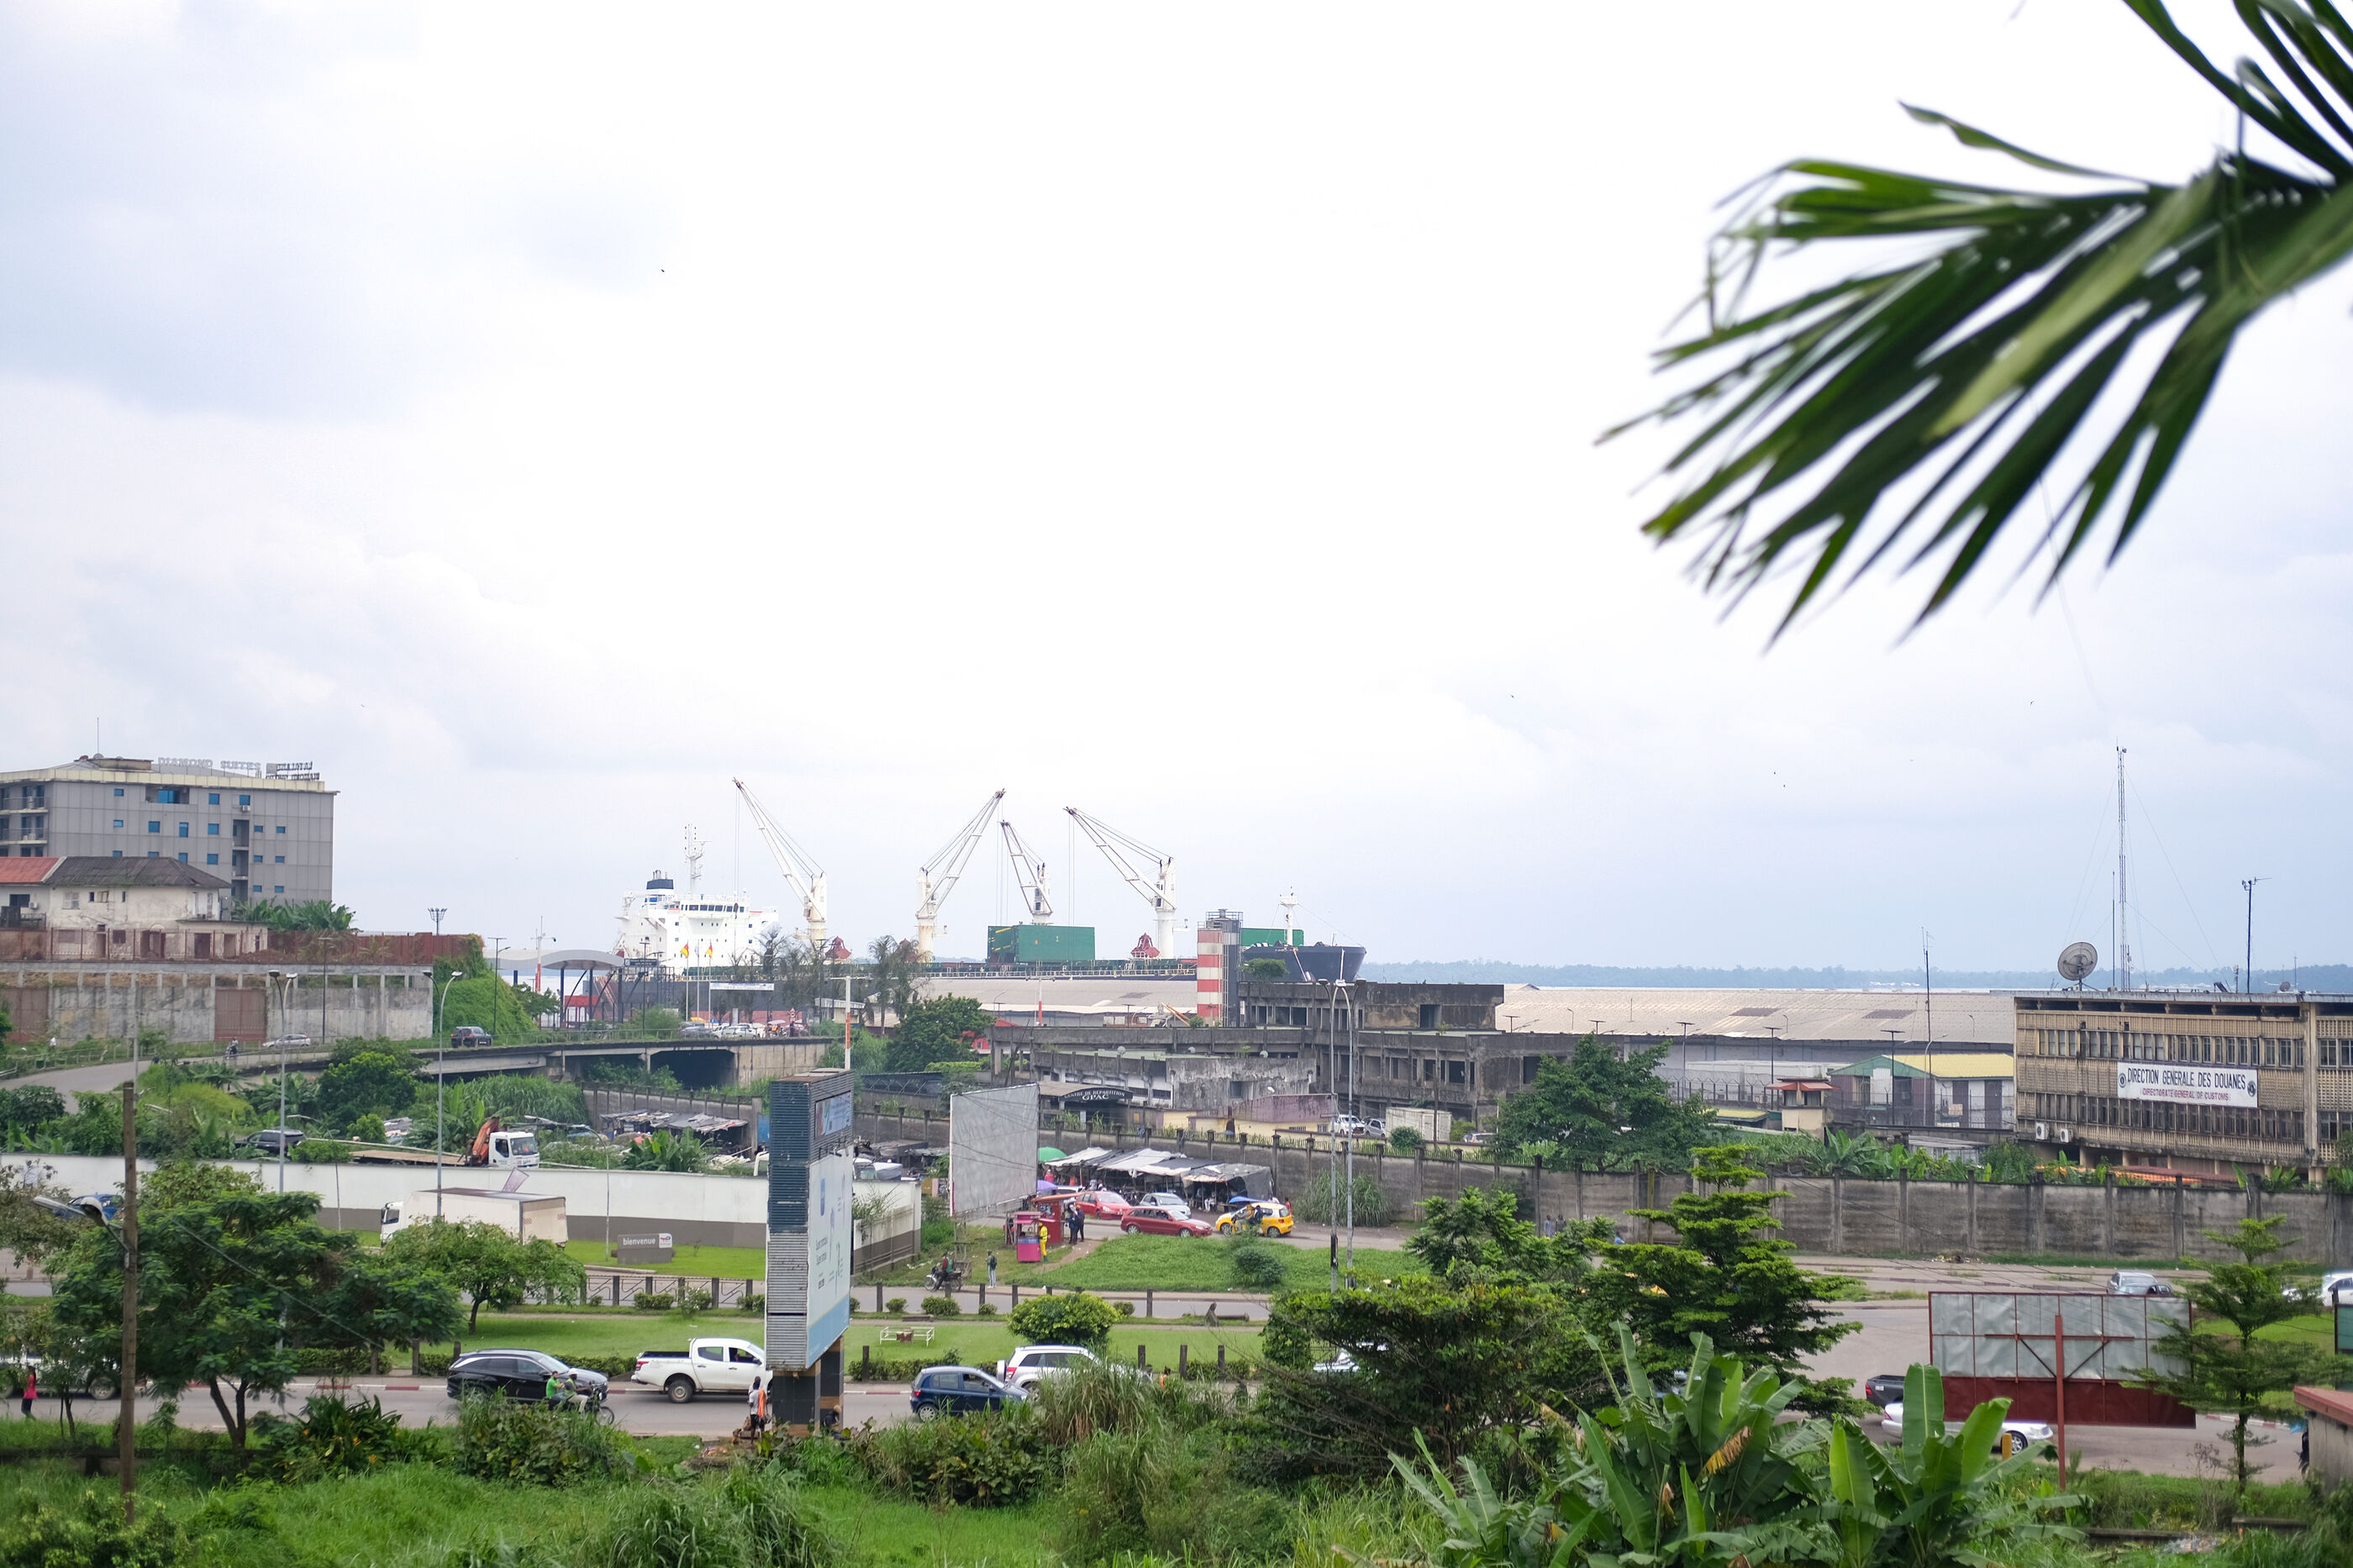 Zu sehen ist ein Hafengebiet mit Straßen, Grünstreifen, Kränen, Gebäuden. Rechts oeben ragt ein Palmzweig ins Bild.